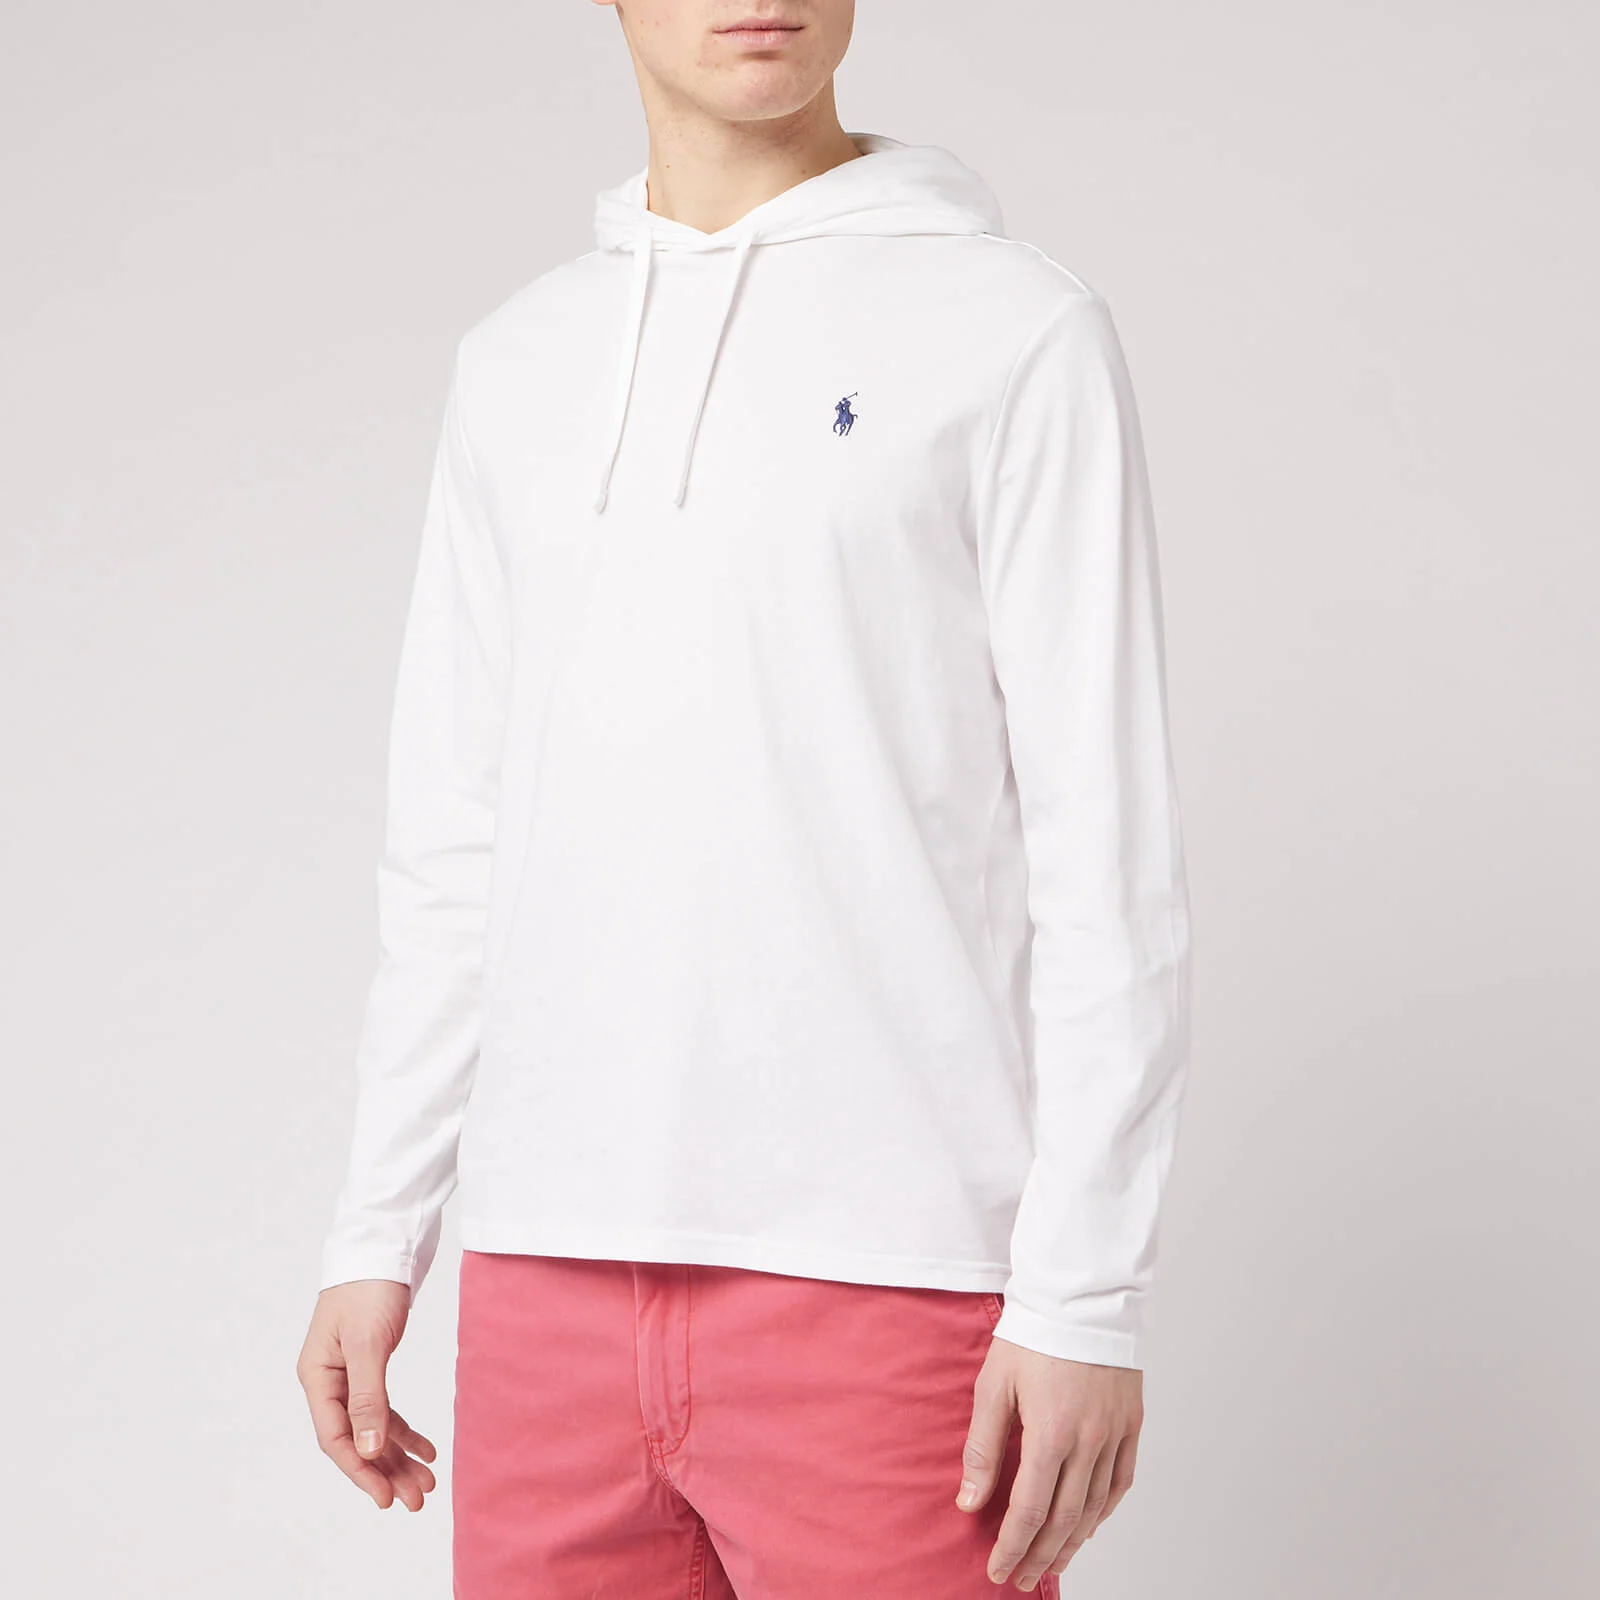 Polo Ralph Lauren Men's Hooded Long Sleeve T-Shirt - White Image 1